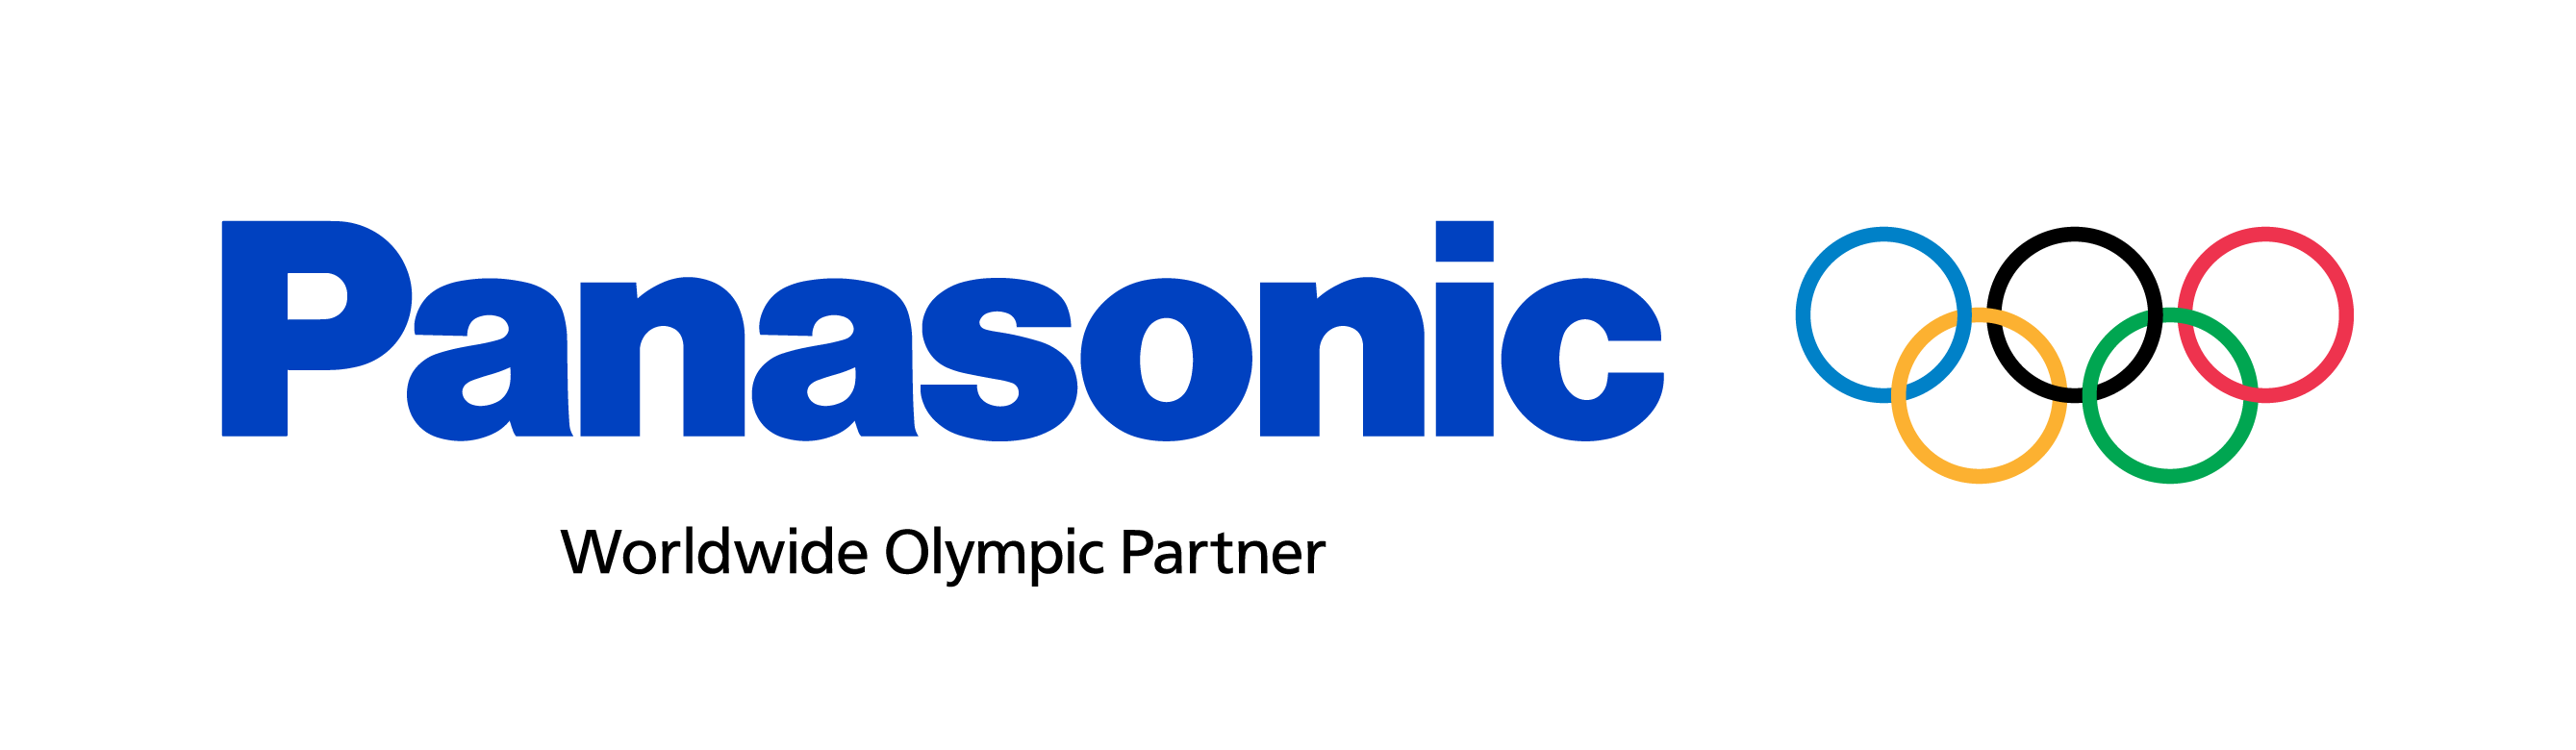 Image: Panasonic Worldwide Olympic Partner Logo